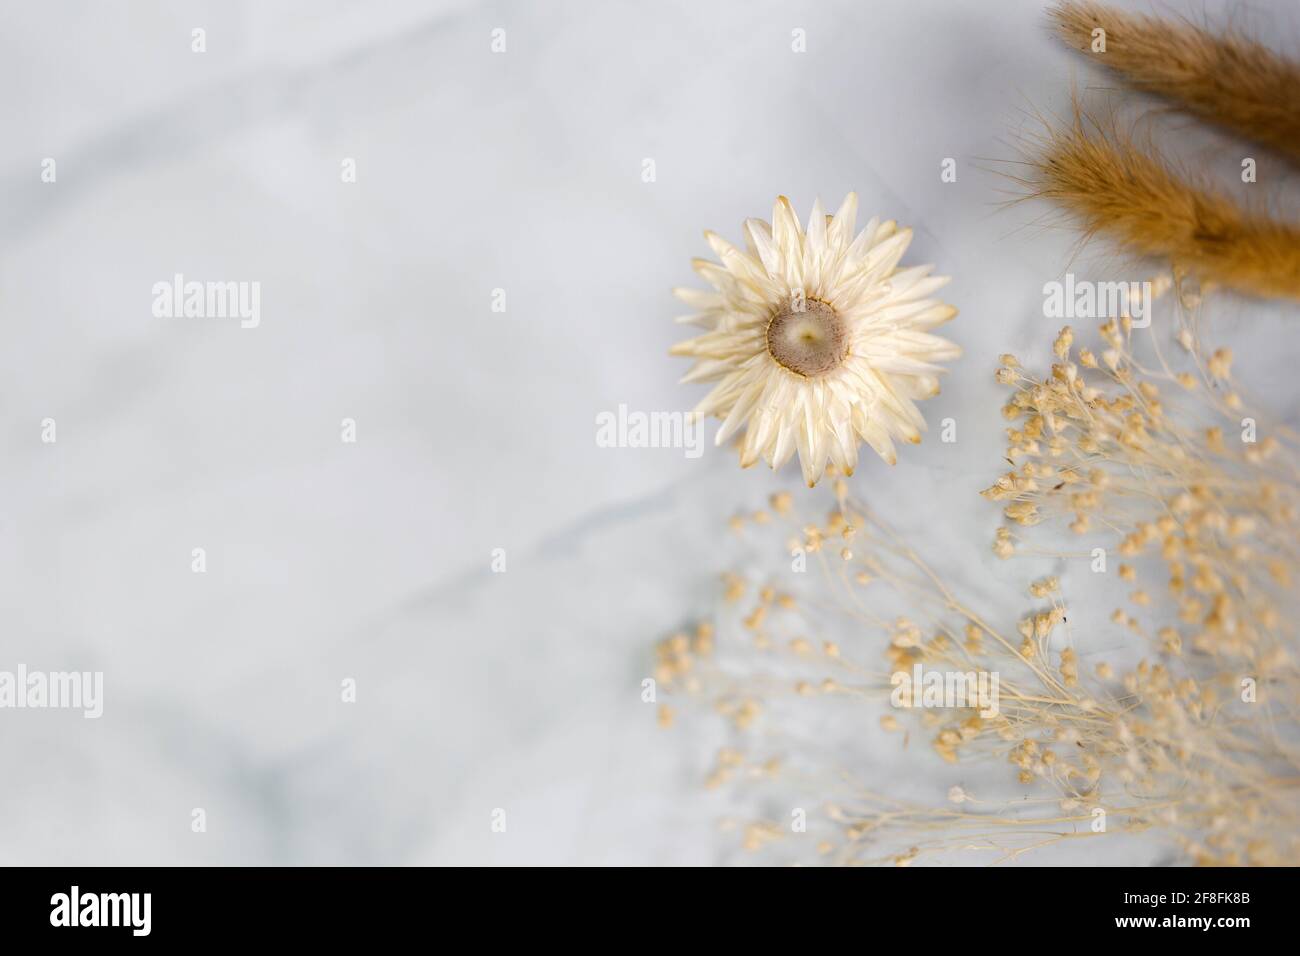 Fresh bight Frühling getrocknete Blume Rahmen isoliert auf weißem Hintergrund mit Kopierraum, romantische, Sommer modernes Konzept, flache Lage, Overhead-Ansicht Stockfoto